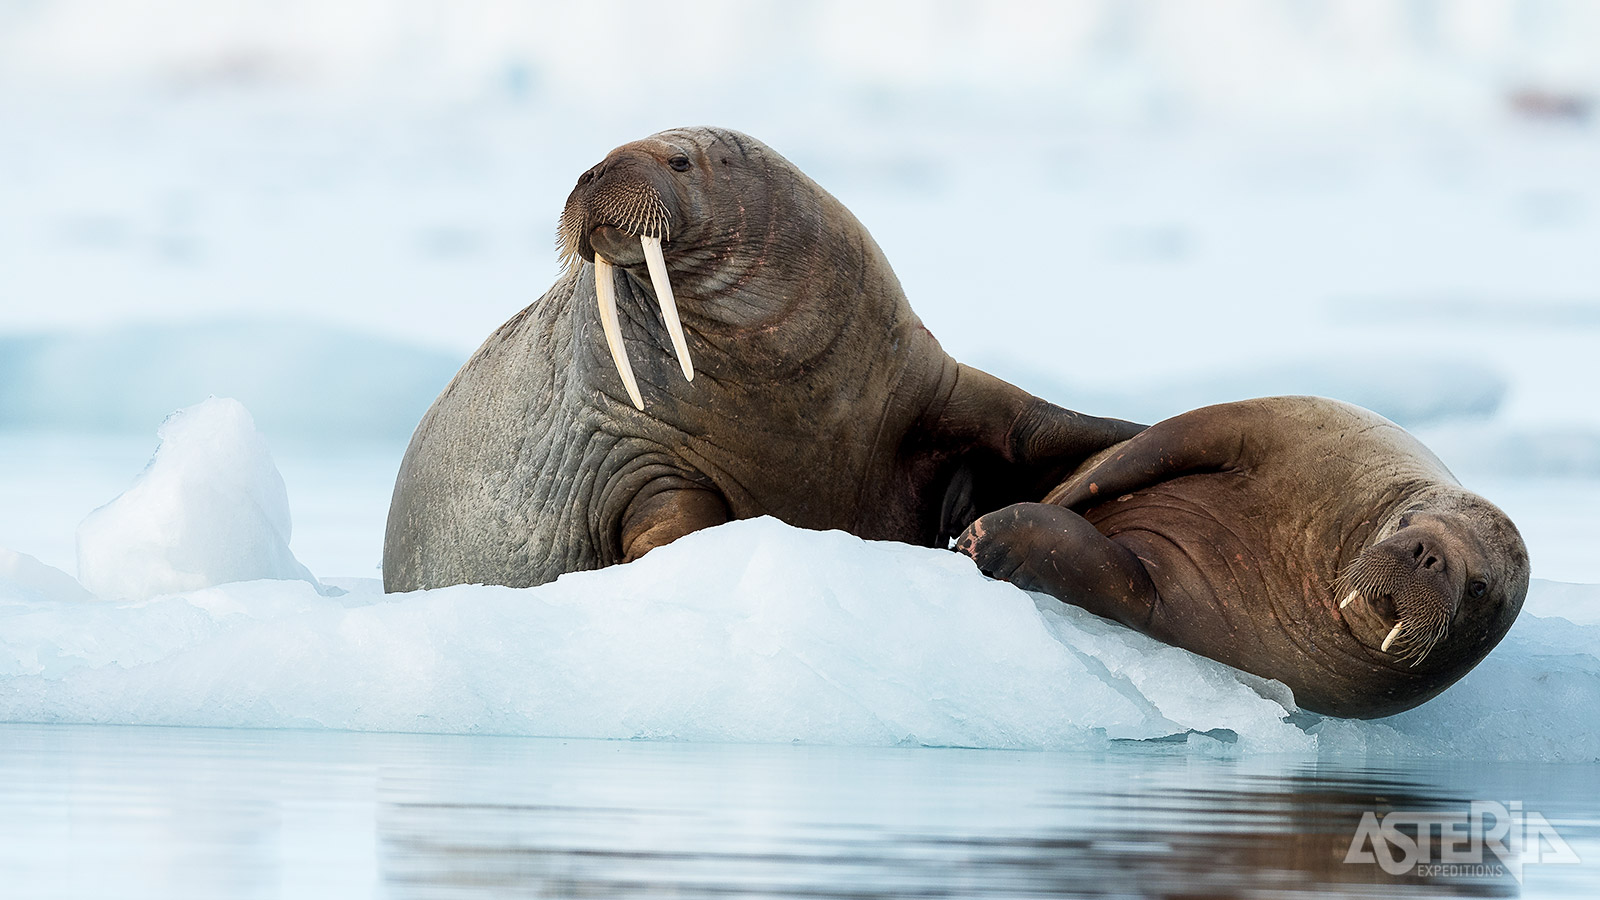 Deze trip biedt een uitstekende gelegenheid om narwallen, ijsberen en walrussen te observeren